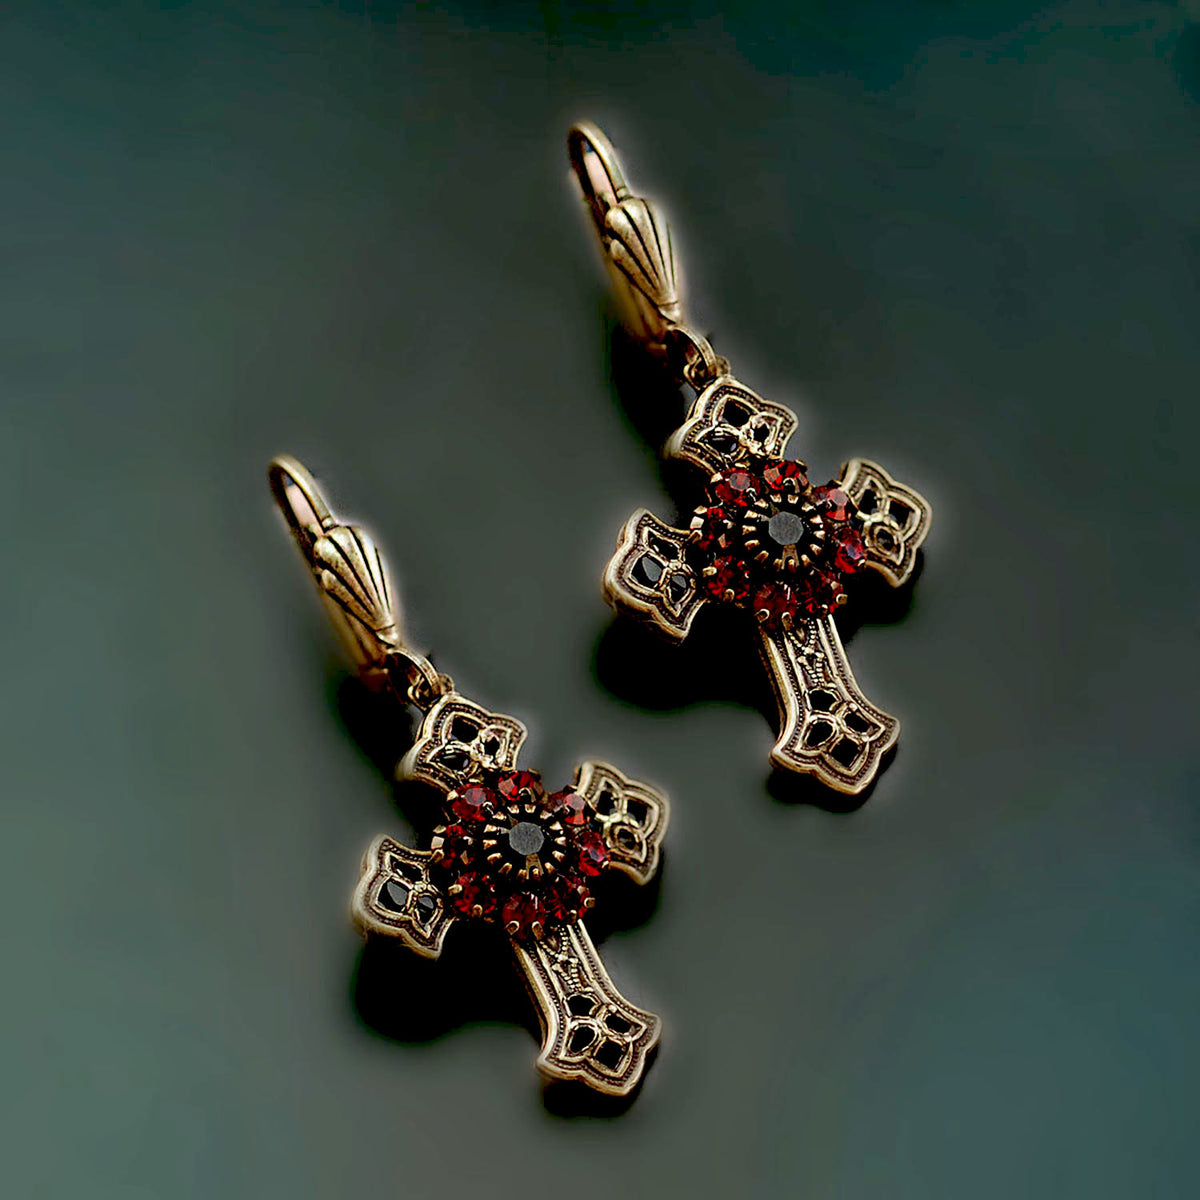 Victorian Black Cross Necklace & Earrings SET